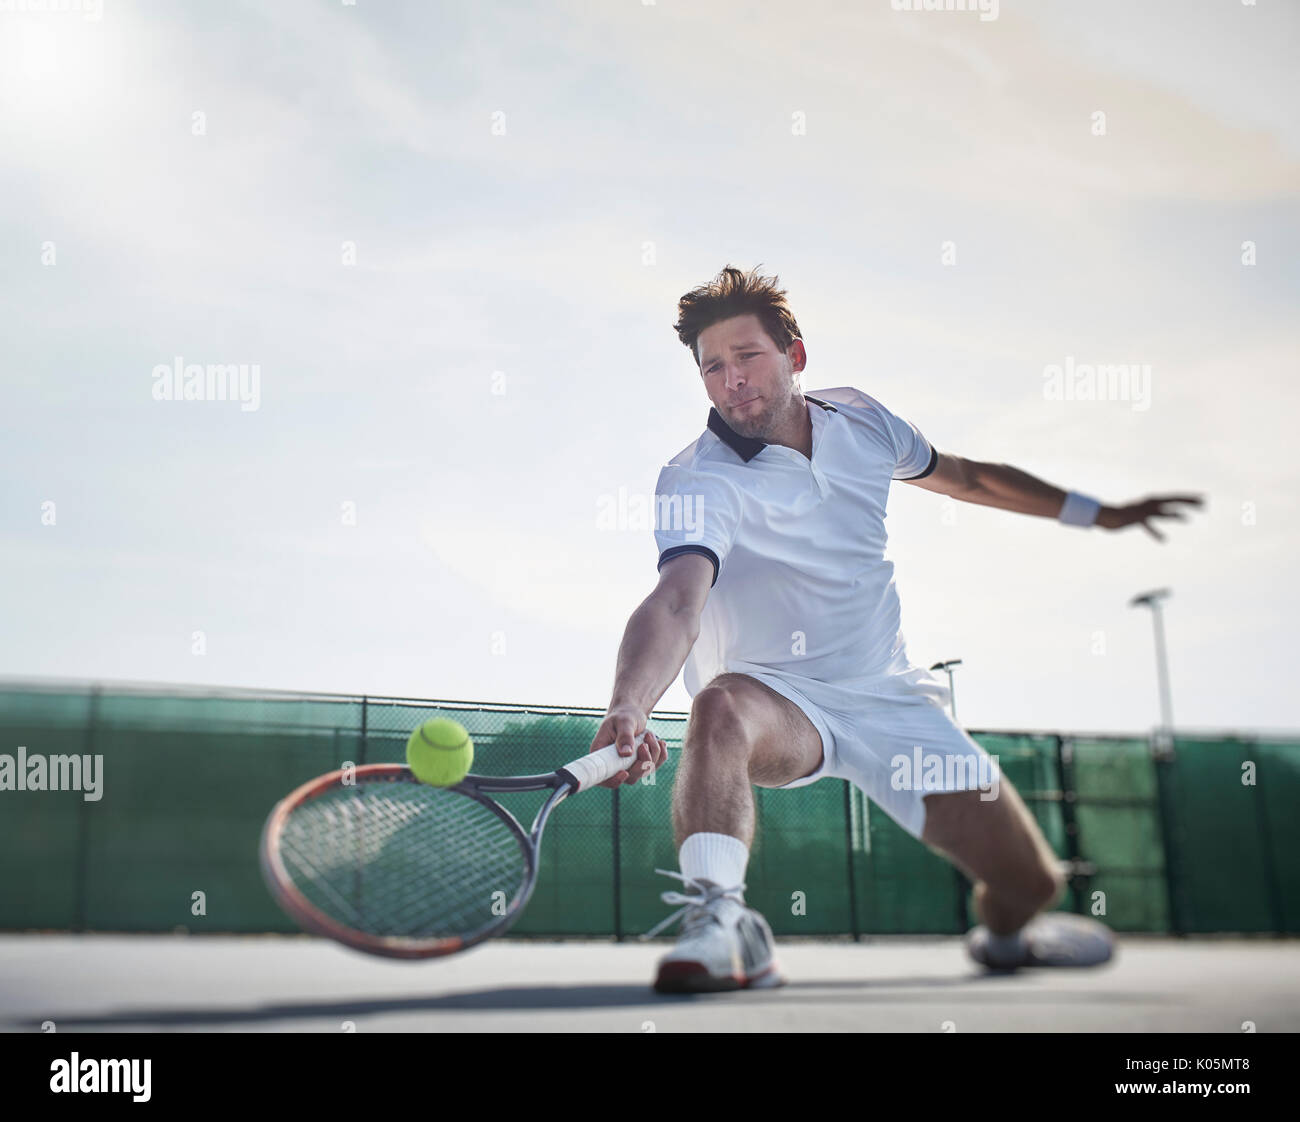 Determinato maschile giovane giocatore di tennis giocando a tennis, raggiungendo per la palla sul soleggiato Campo da tennis Foto Stock